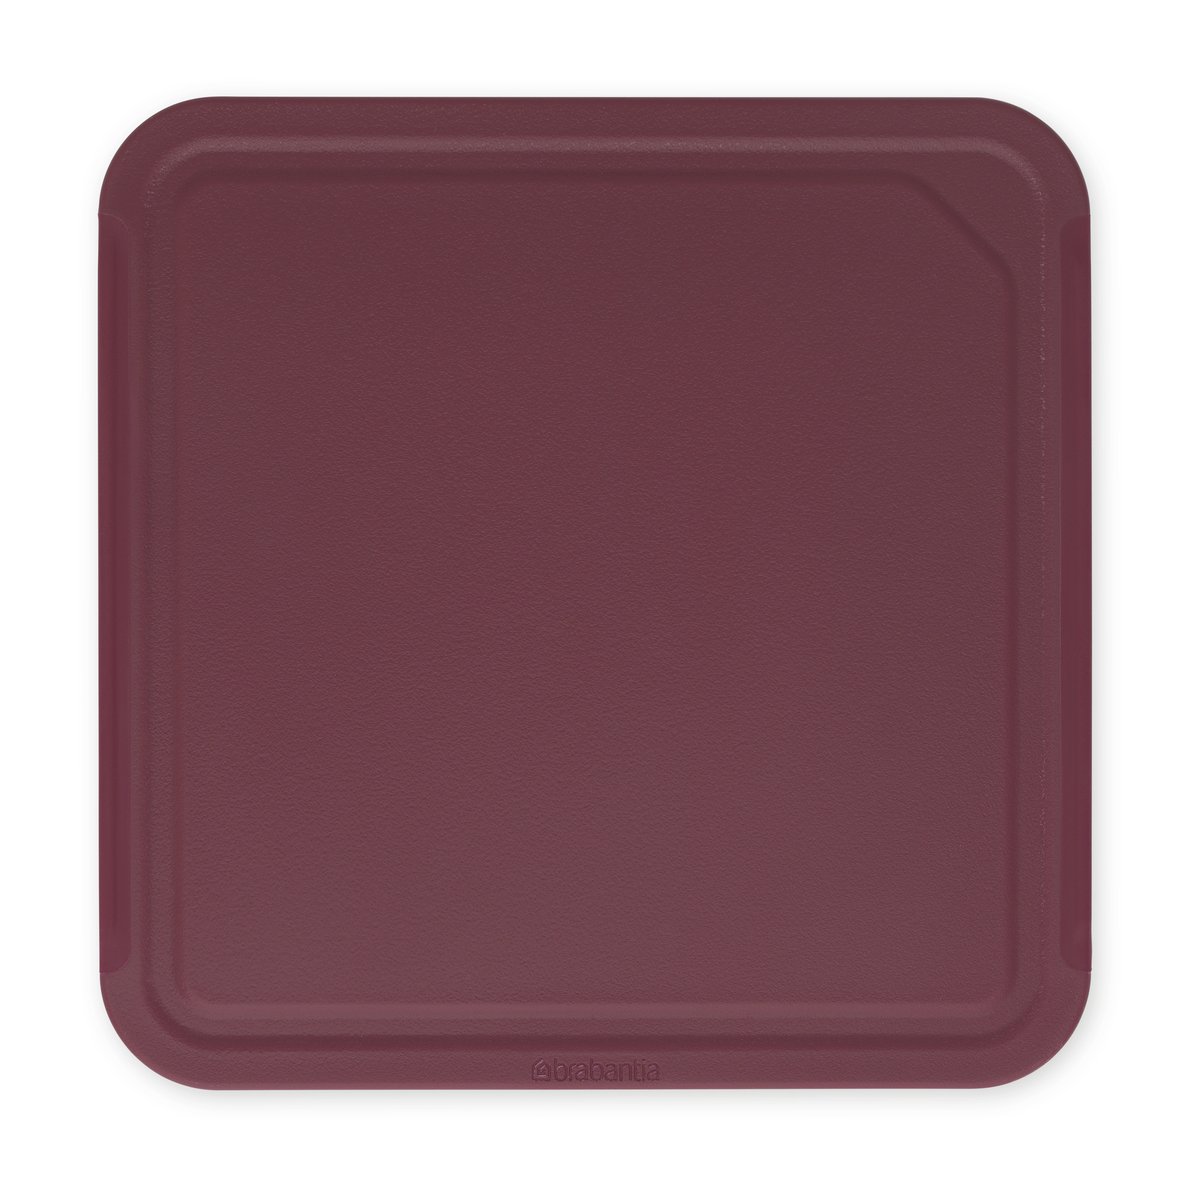 Brabantia TASTY+ skærebræt medium 25×25 cm Aubergine red